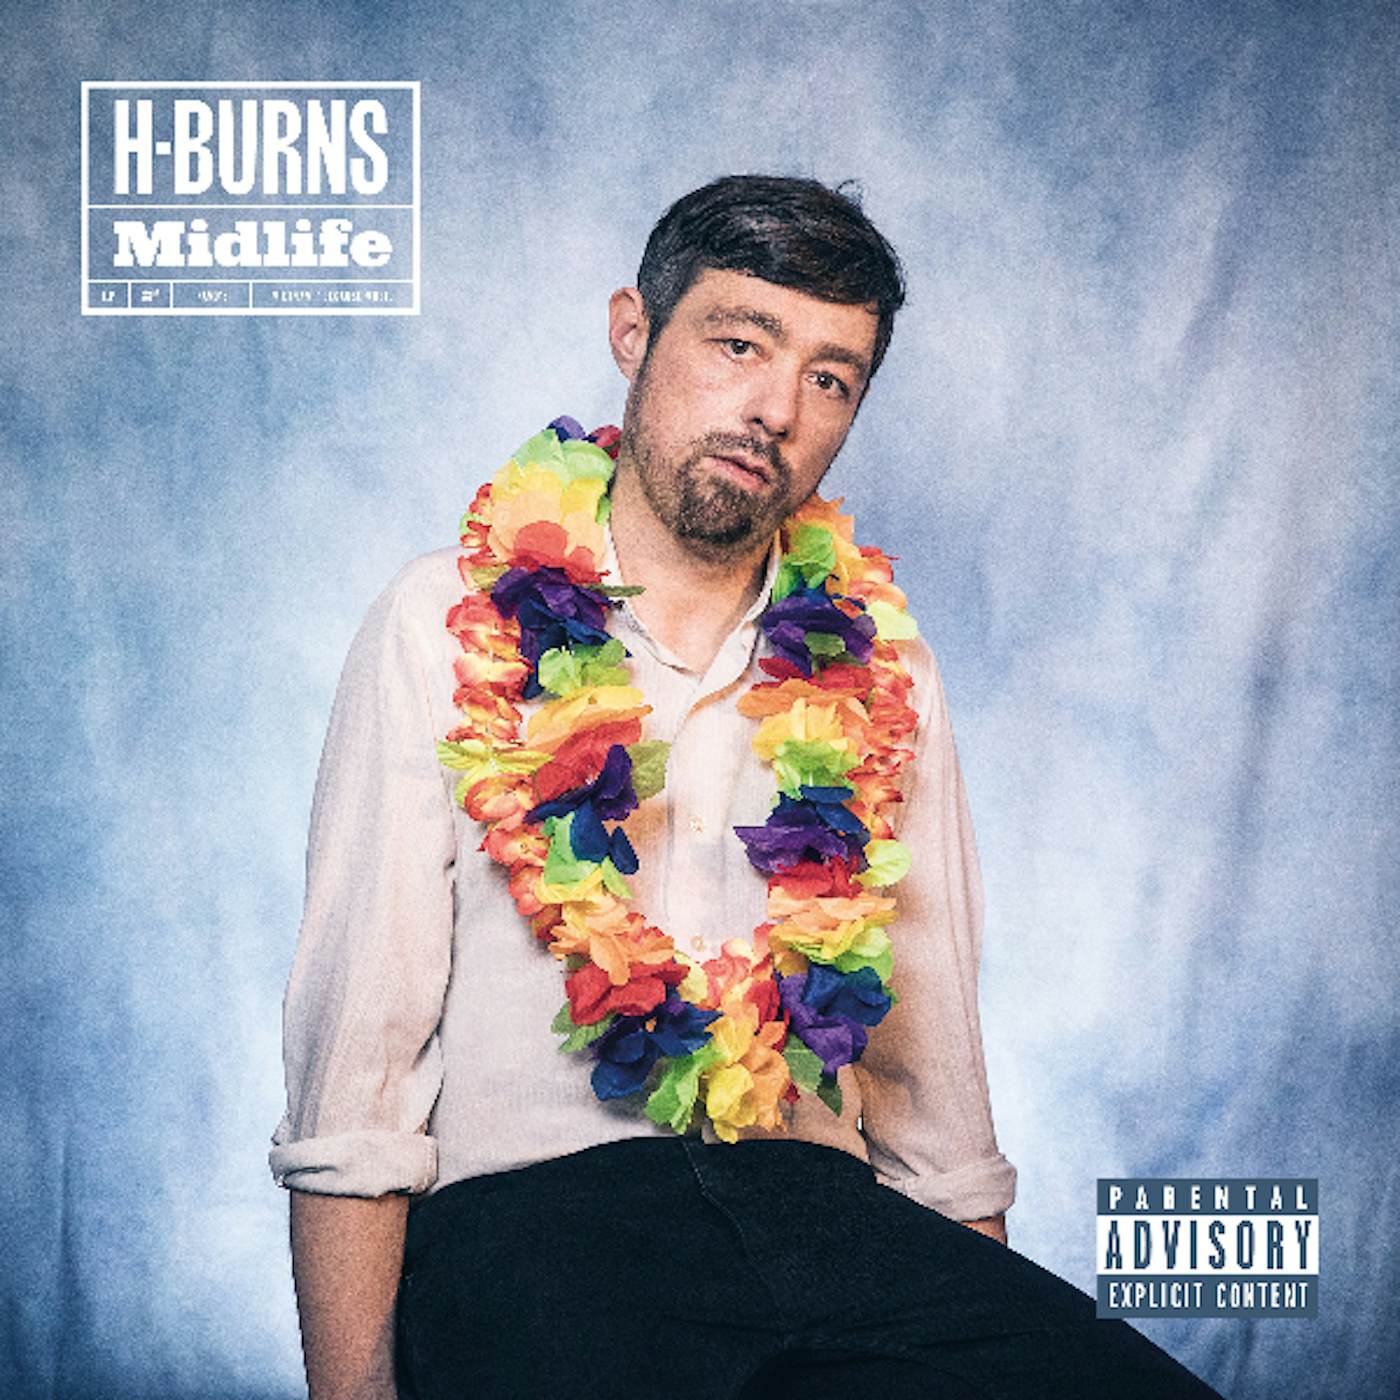 H-Burns MIDLIFE CD